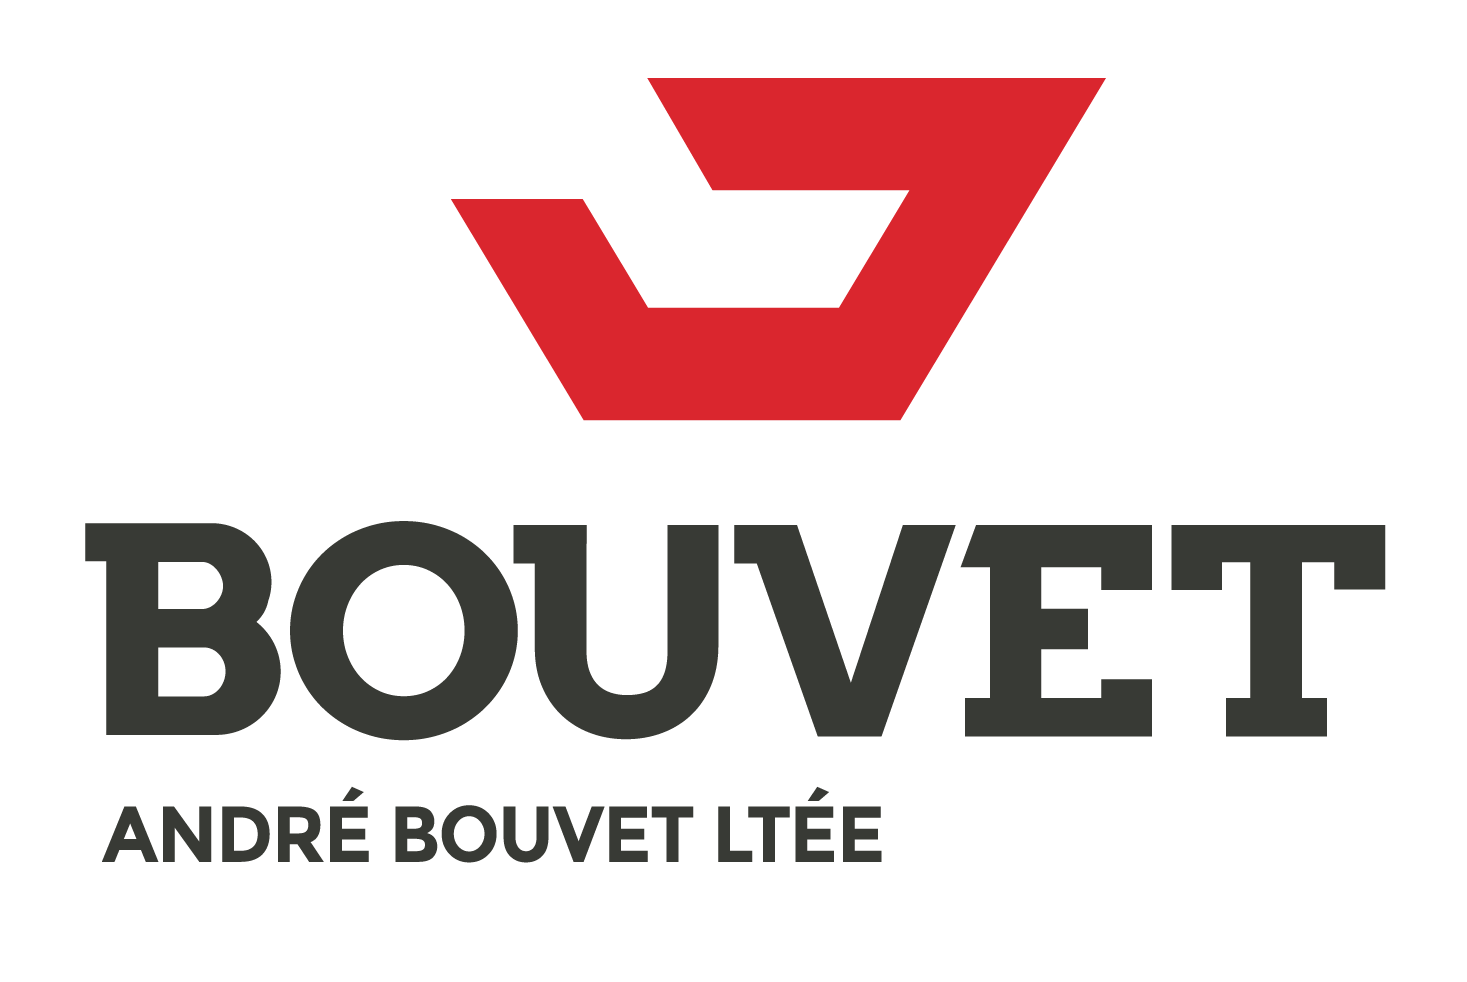 André Bouvet